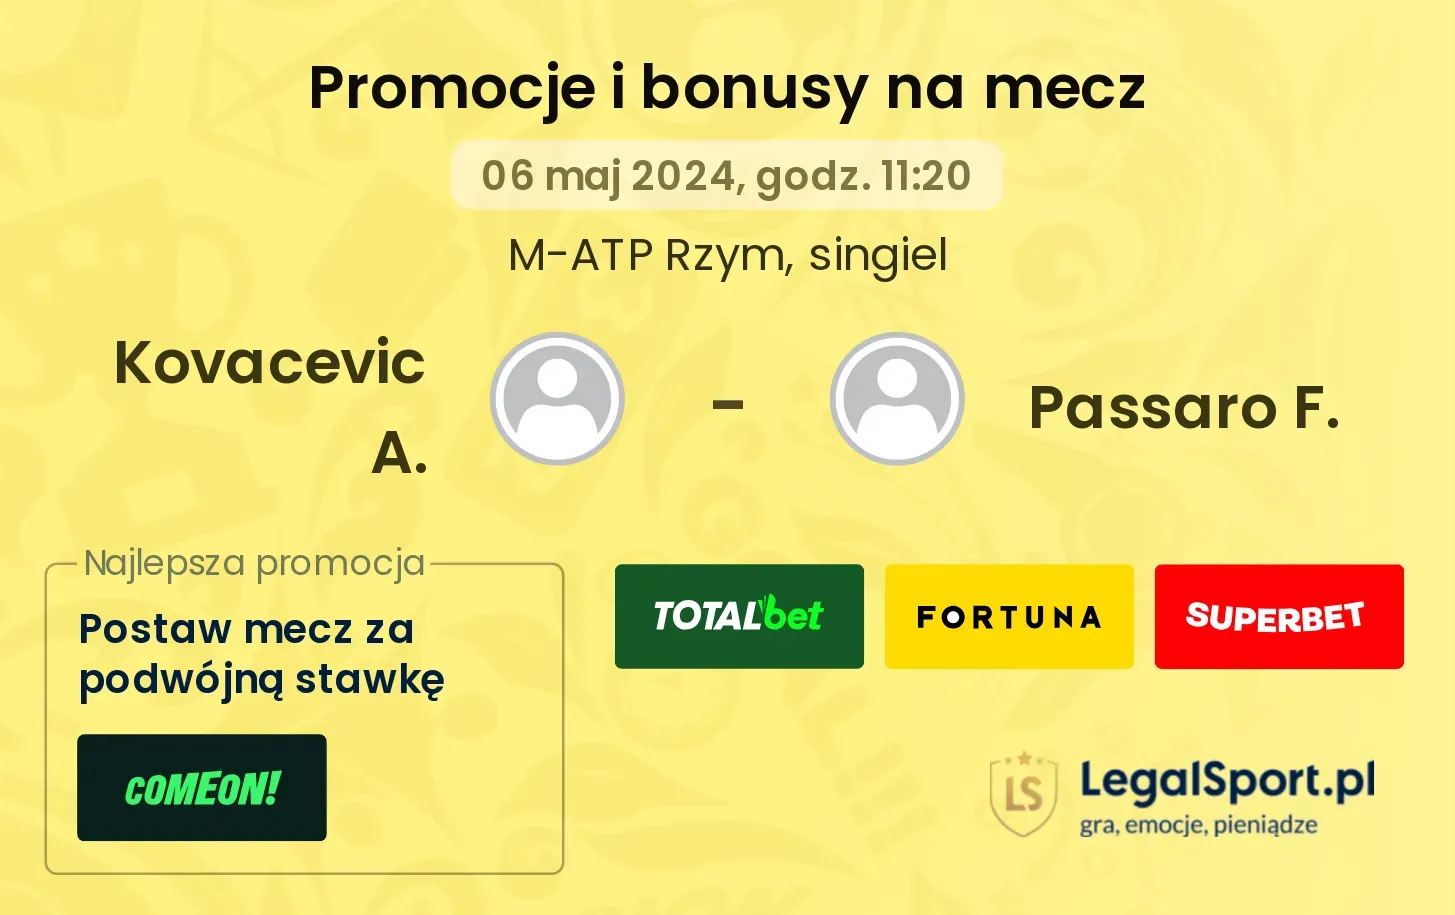 Kovacevic A. - Passaro F. promocje bonusy na mecz